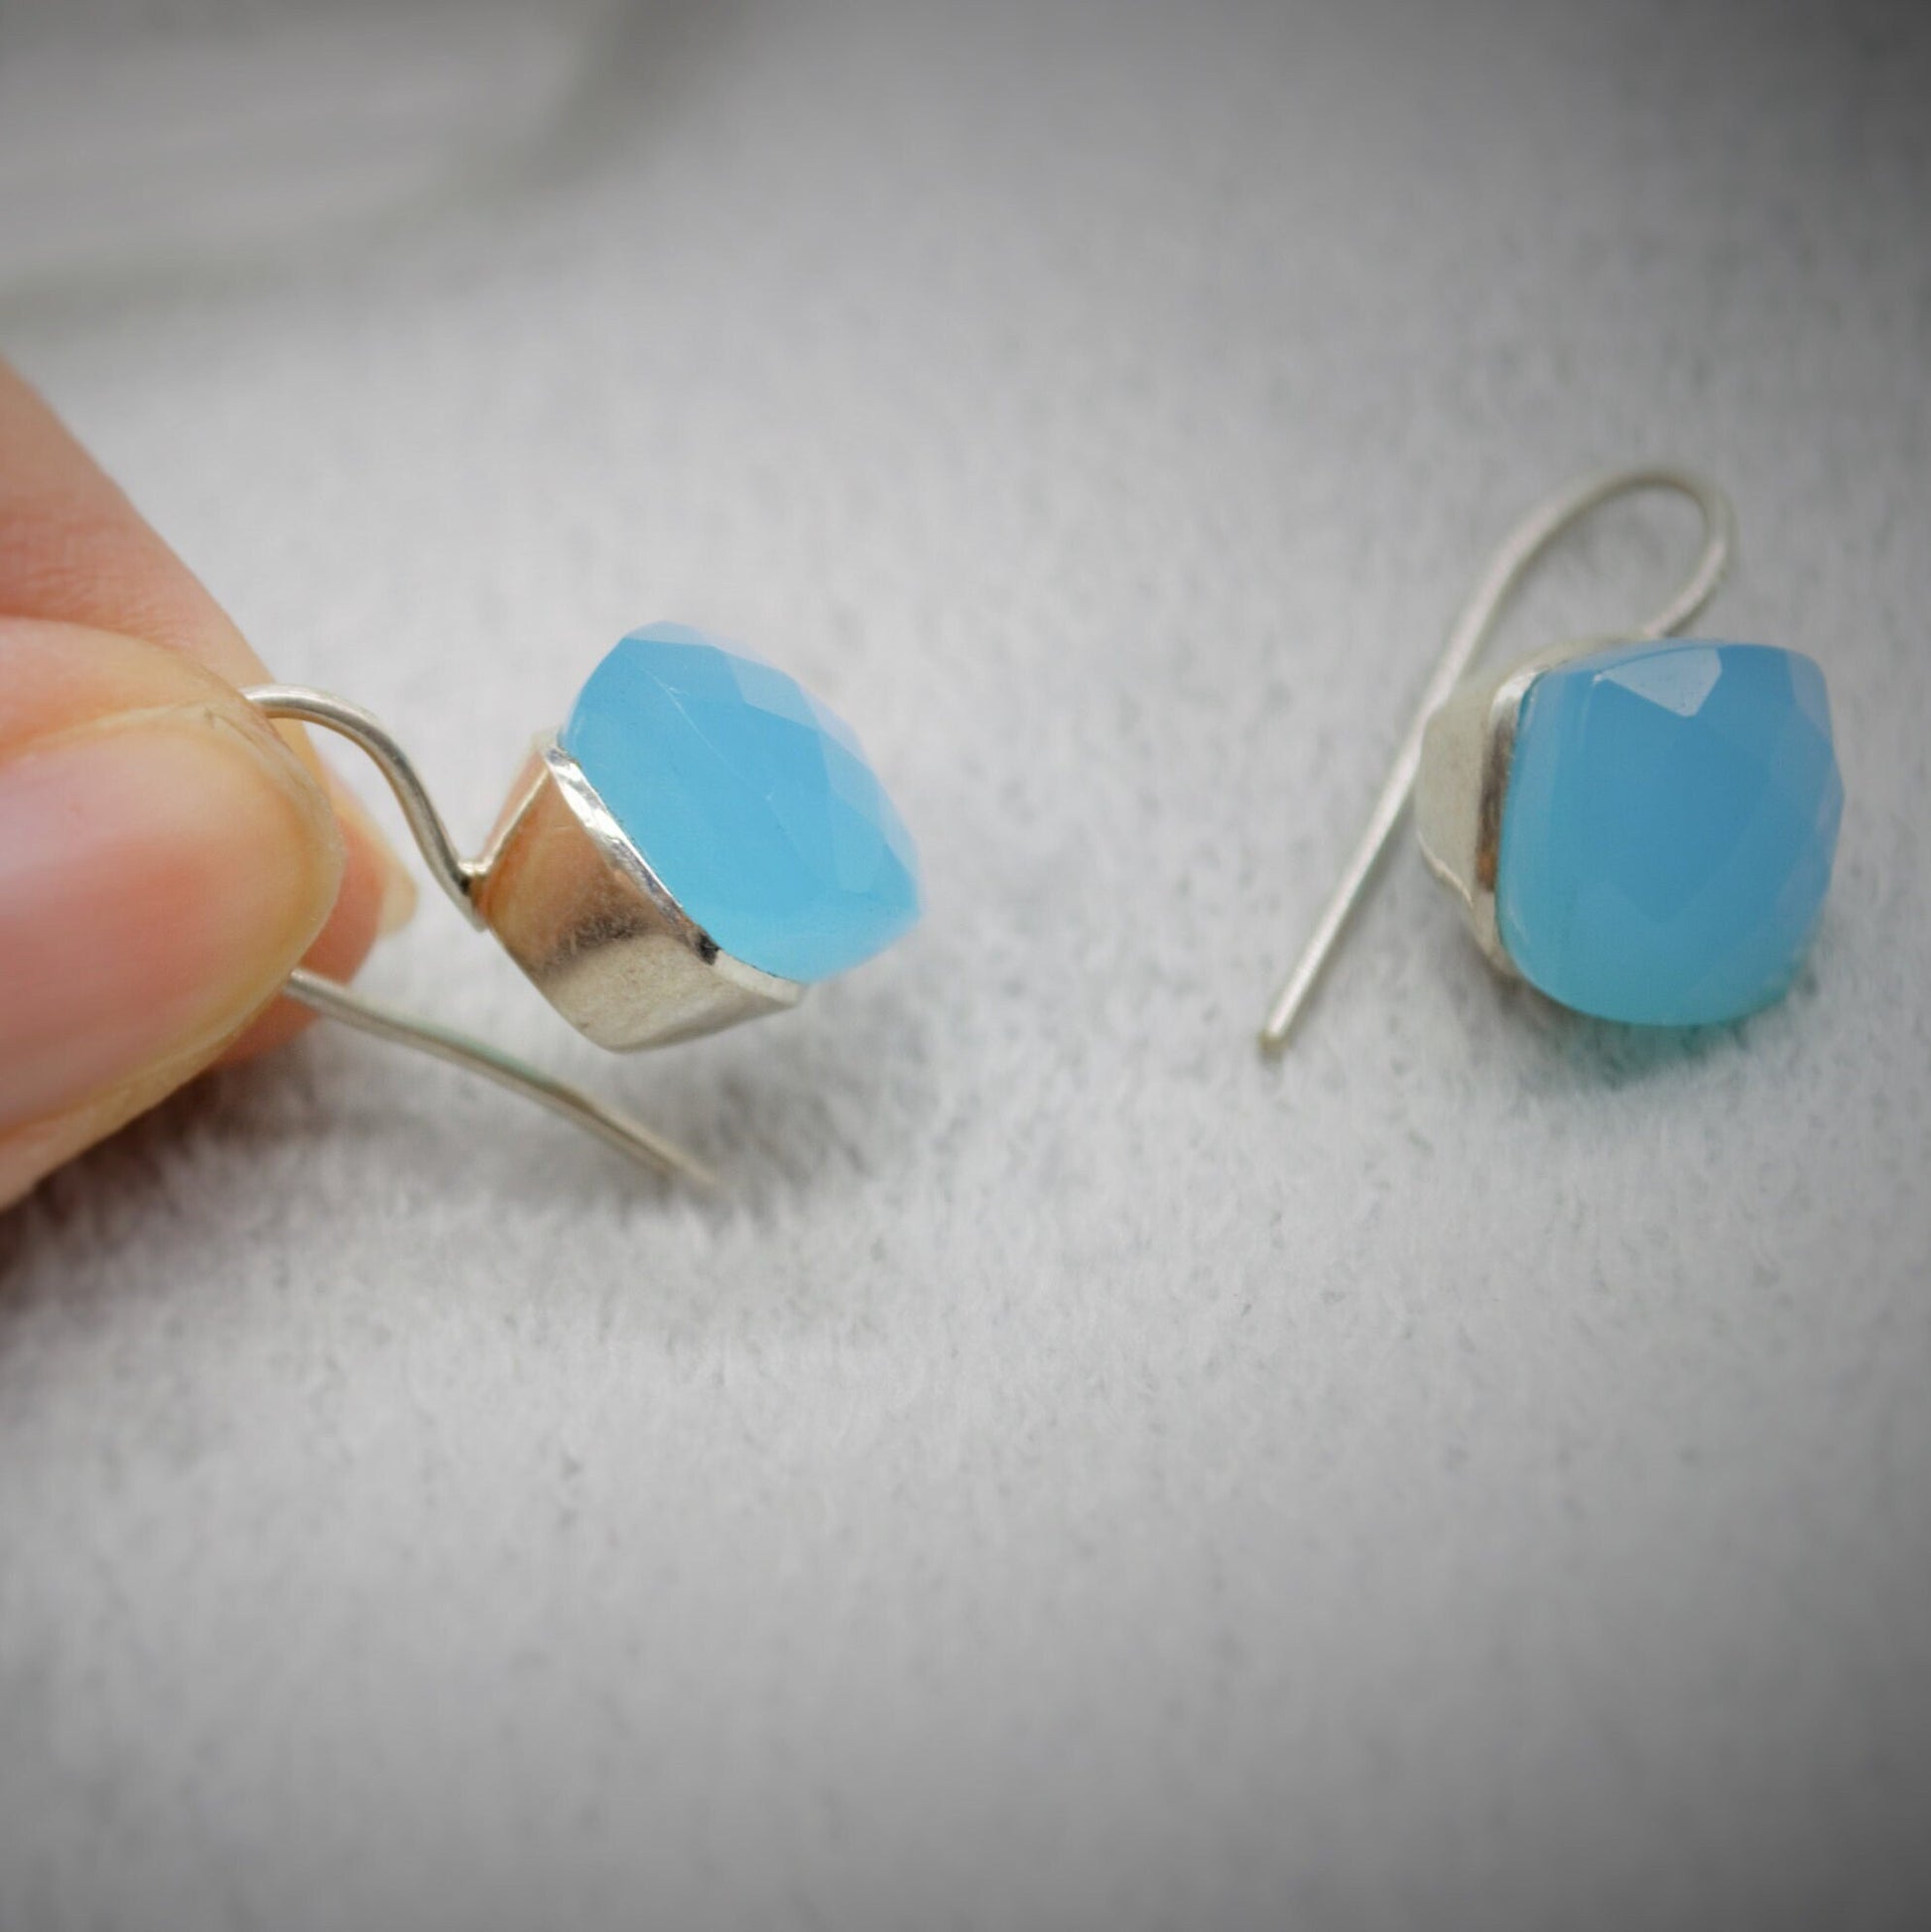 Blue Chalcedony drop earrings, Sterling Silver Gemstone Earrings, Dangle Drop Earrings, Handmade Earrings, Gifts For Her